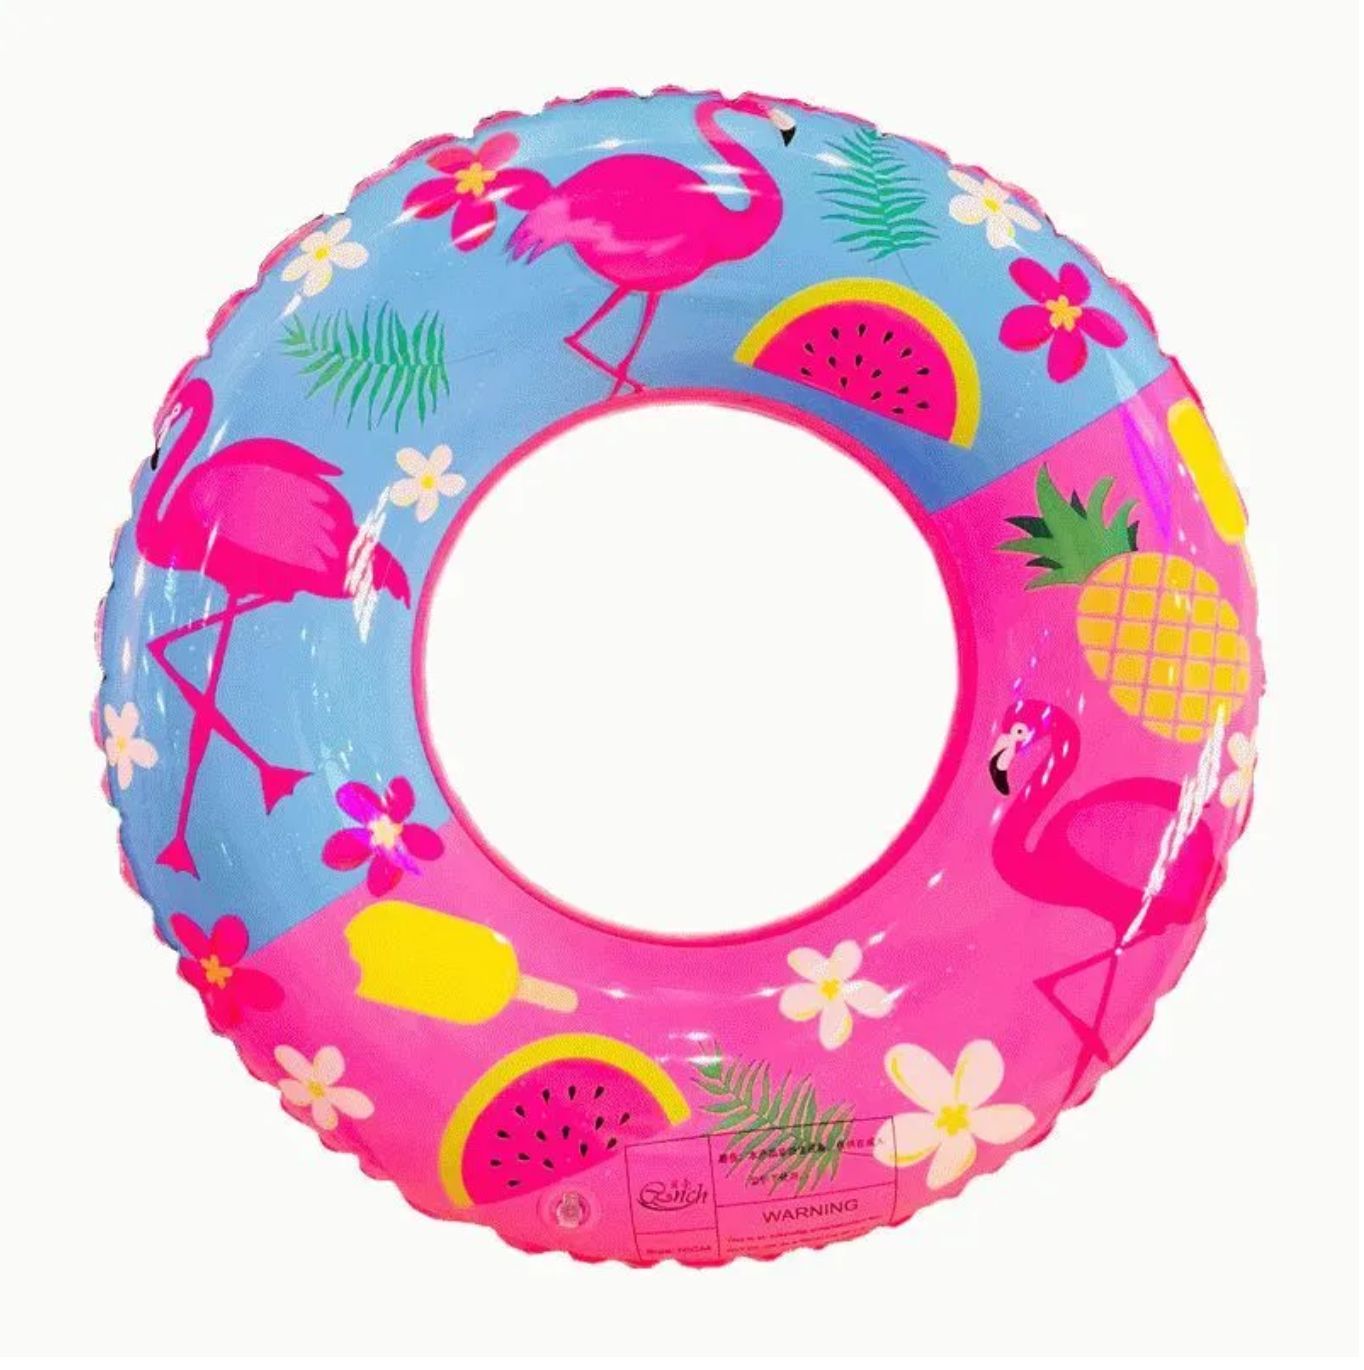 Круги для плавания для детей. Надувной круг Swim Ring. Круг для плавания Swim Ring 70см. Flamingo надувной круг Inflatable swimming. Круг для плавания Swim Ring 80см зеленый.